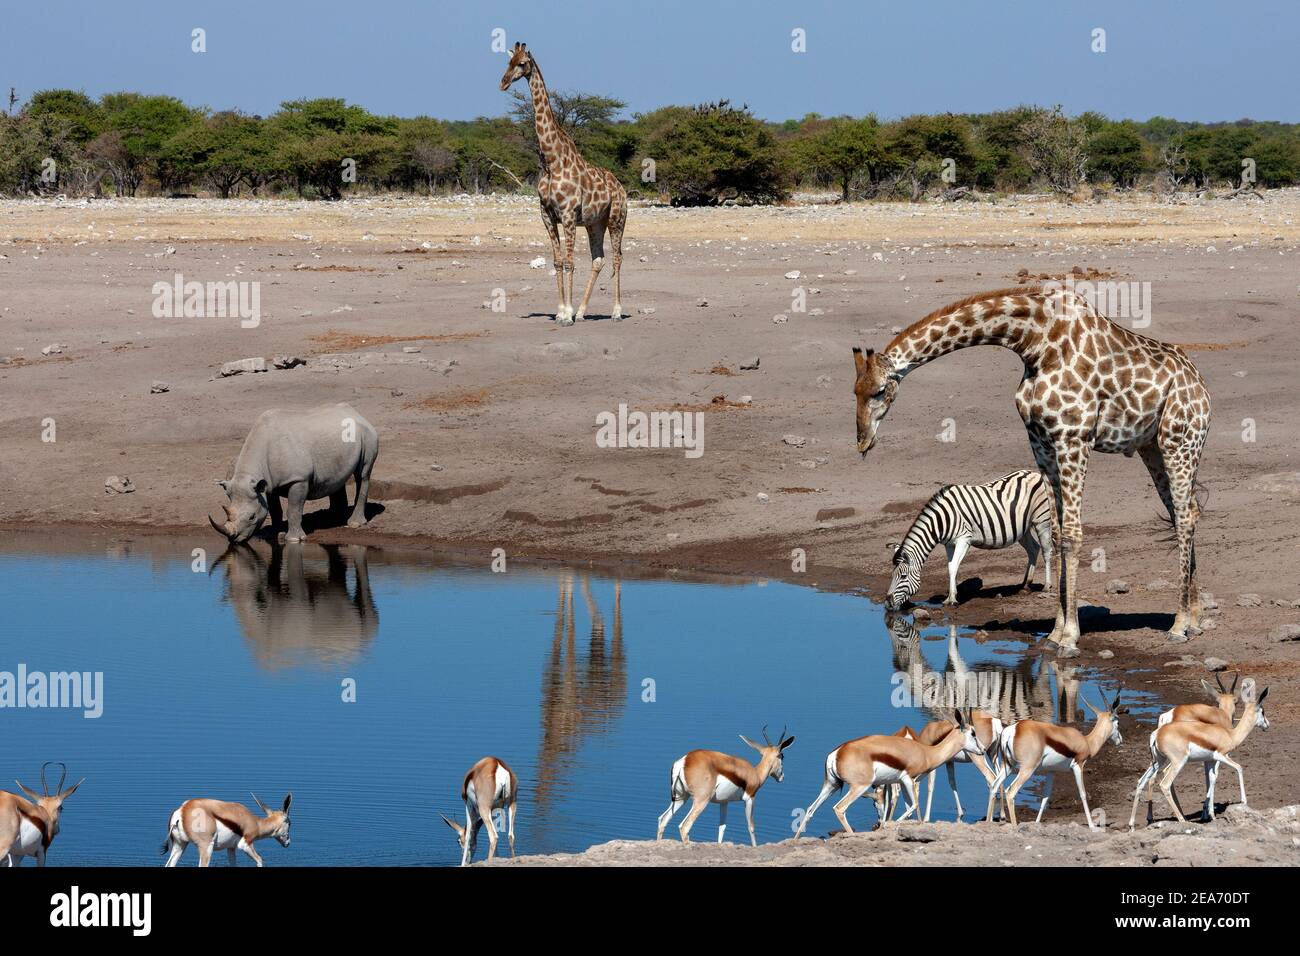 Pozo de agua ocupado en el Parque Nacional Etosha en Namibia, África. Jirafa, rinocerontes negros, antílopes Zebra y Springbok. Foto de stock